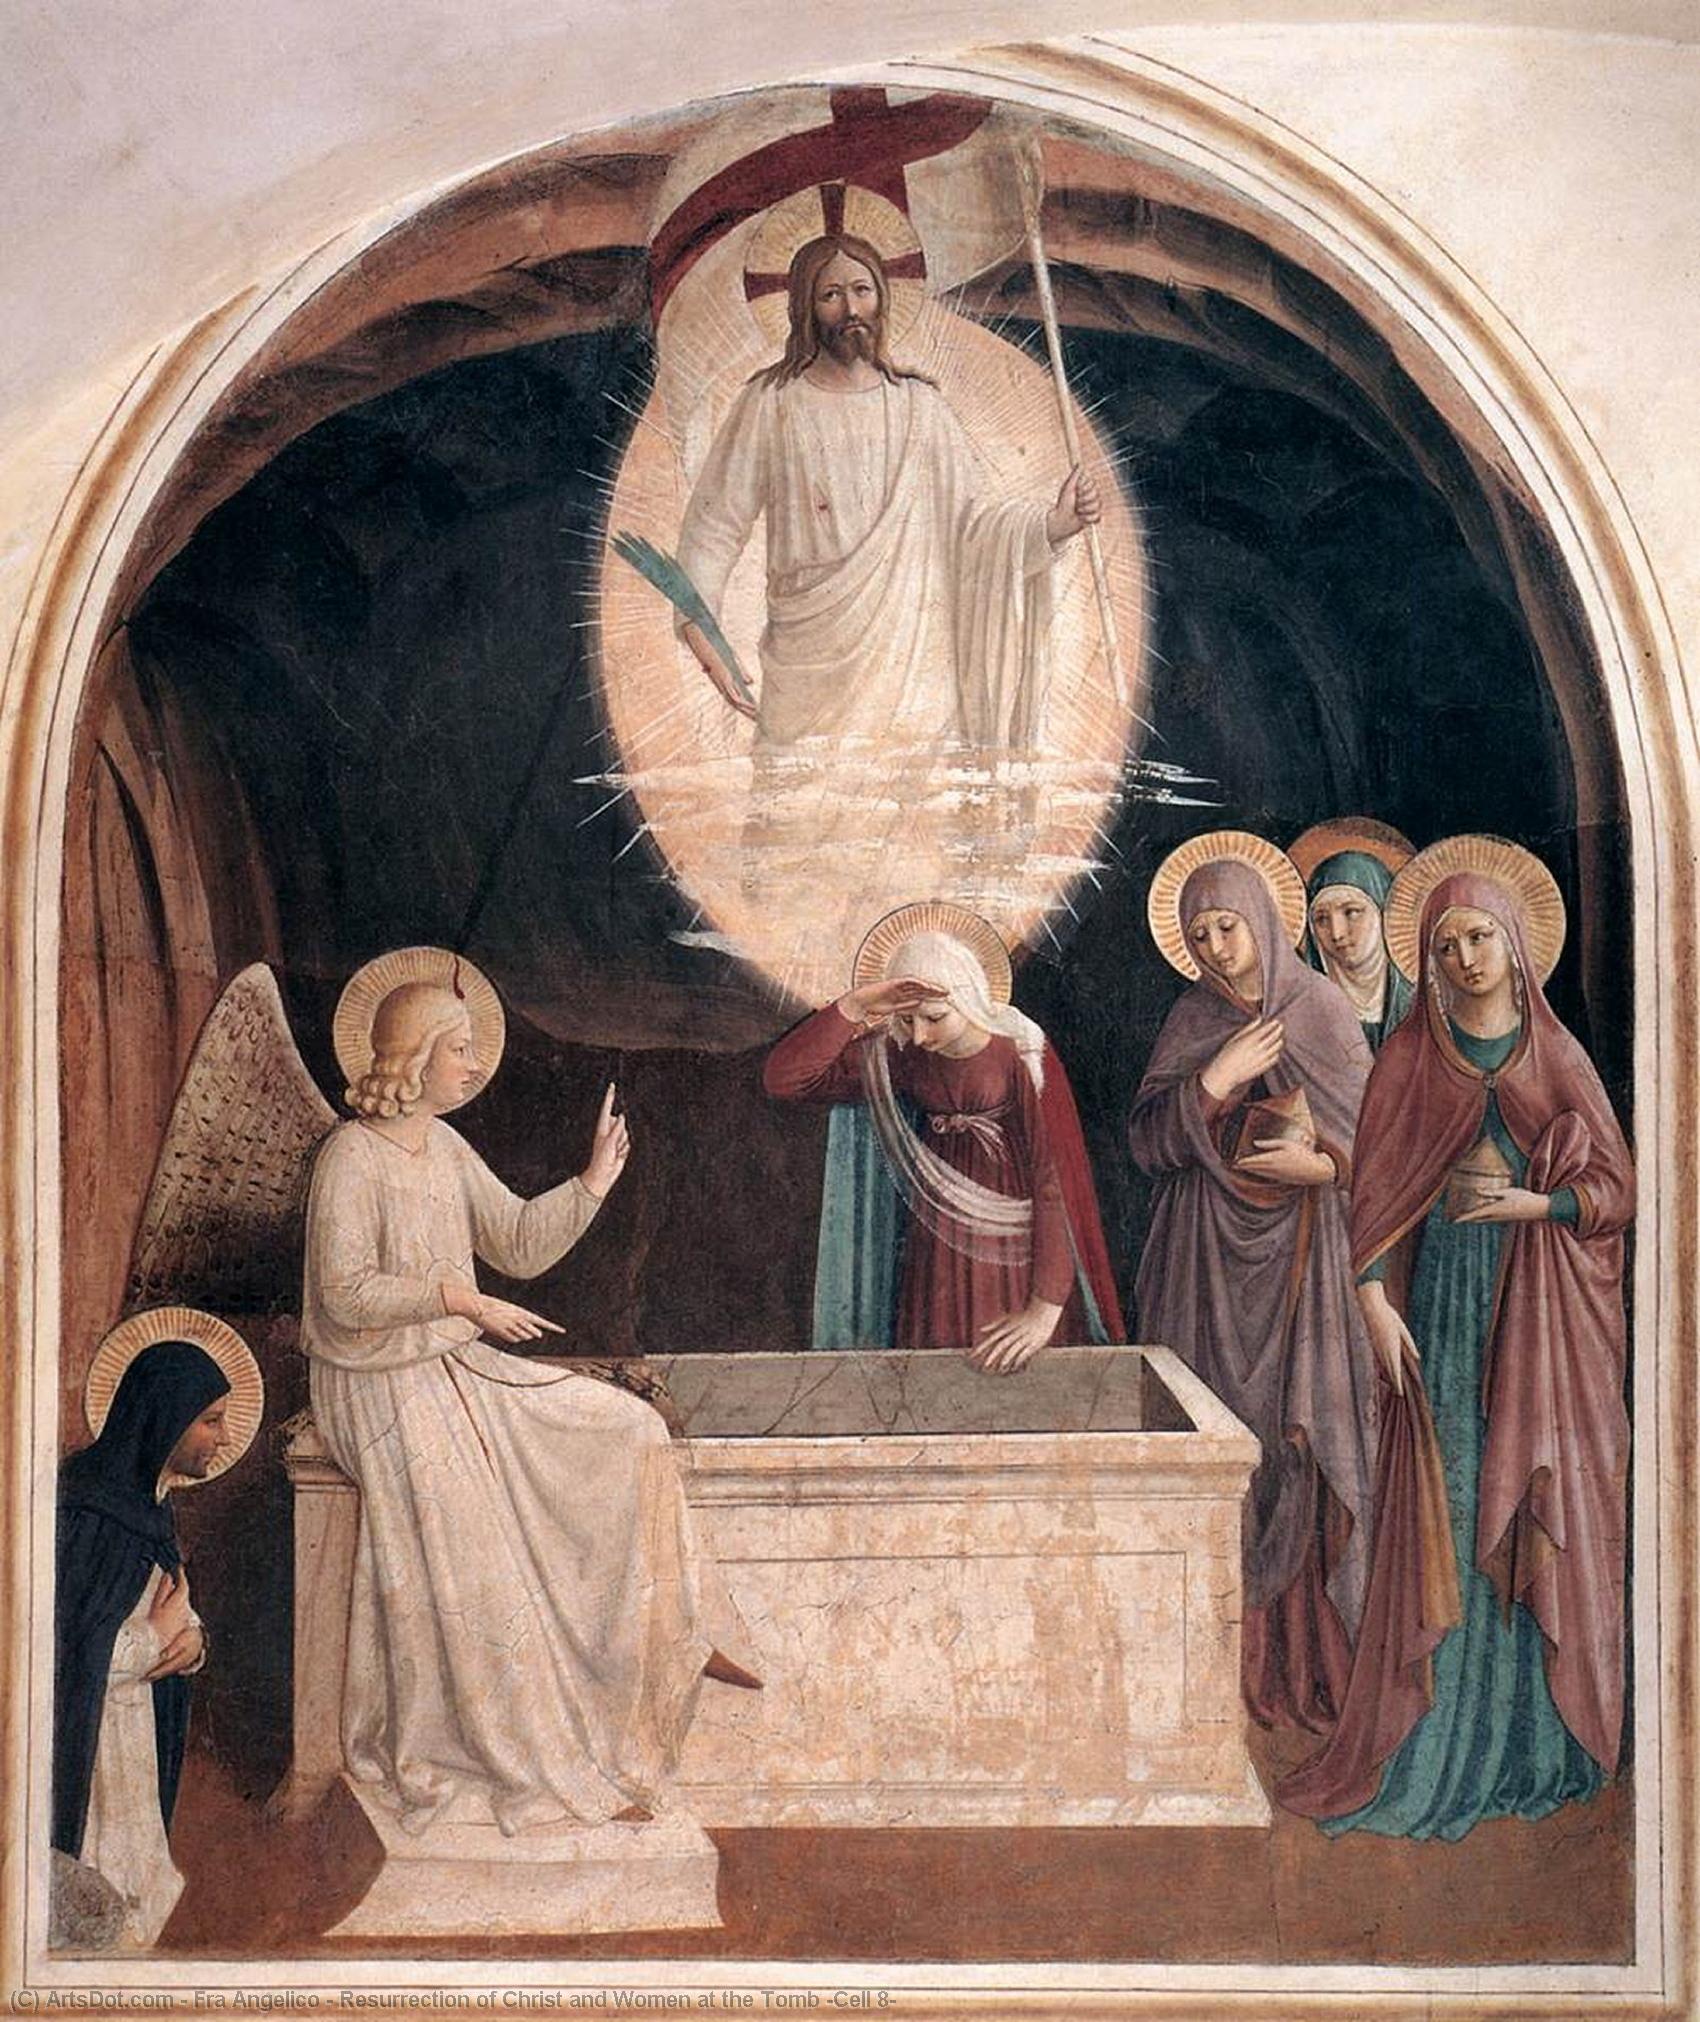 Compra Riproduzioni D'arte Del Museo Risurrezione di Cristo e delle Donne alla Tomba (Cell 8), 1440 di Fra Angelico (1395-1455, Italy) | ArtsDot.com